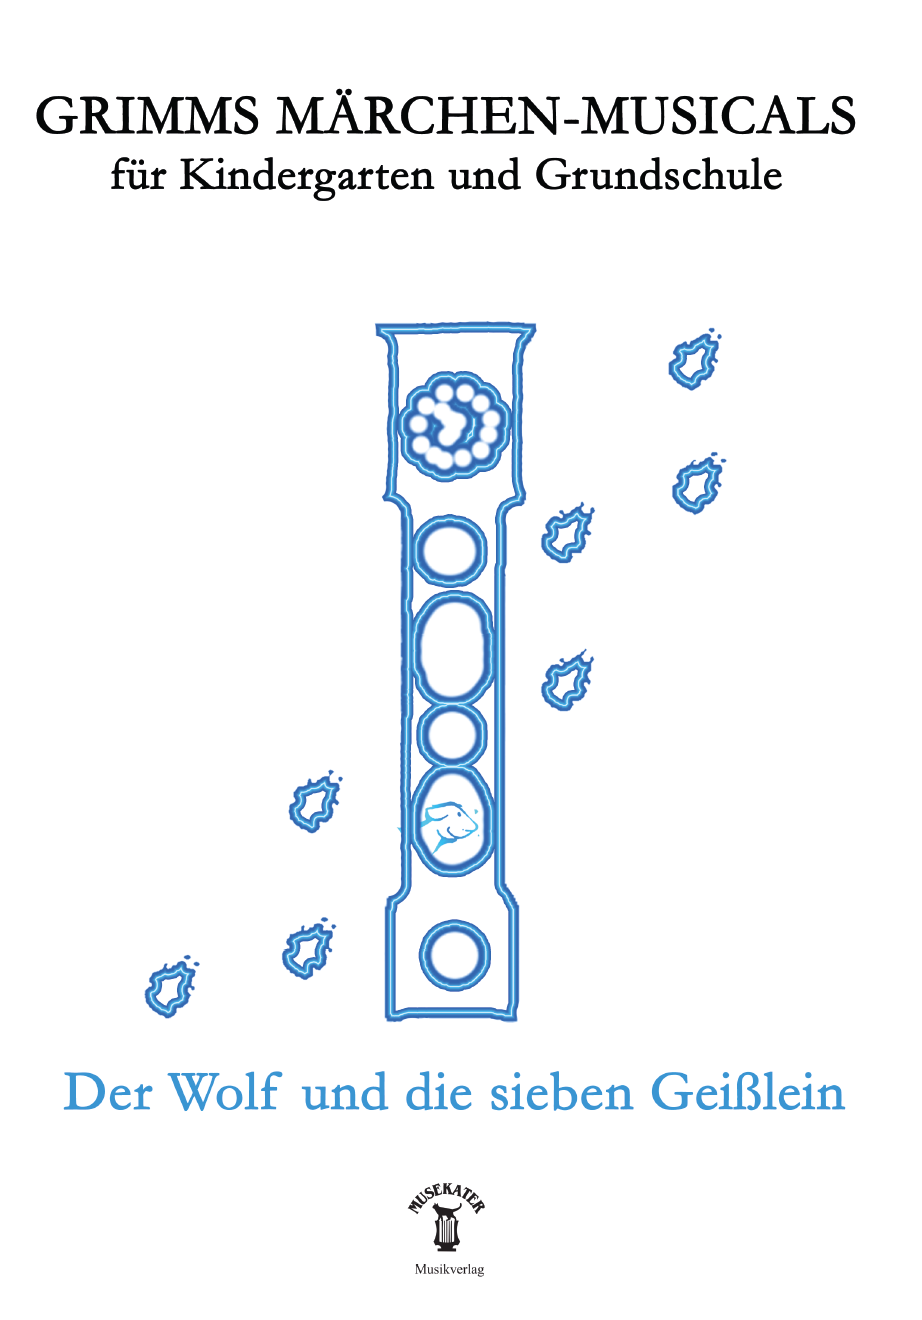 Grimms Märchen-Musicals: Der Wolf und die sieben Geißlein